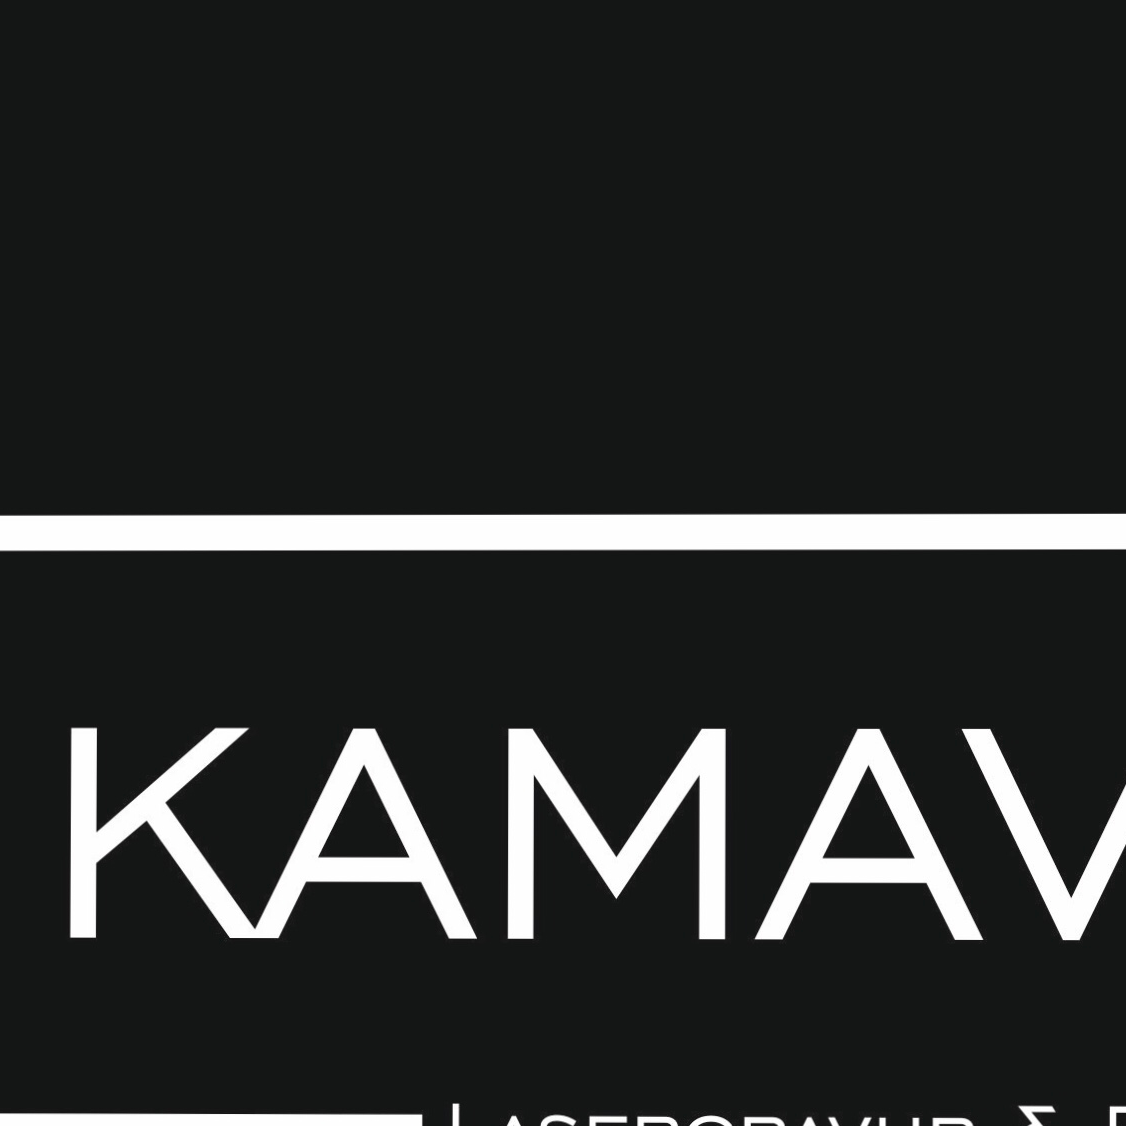 Bilder Kamavision